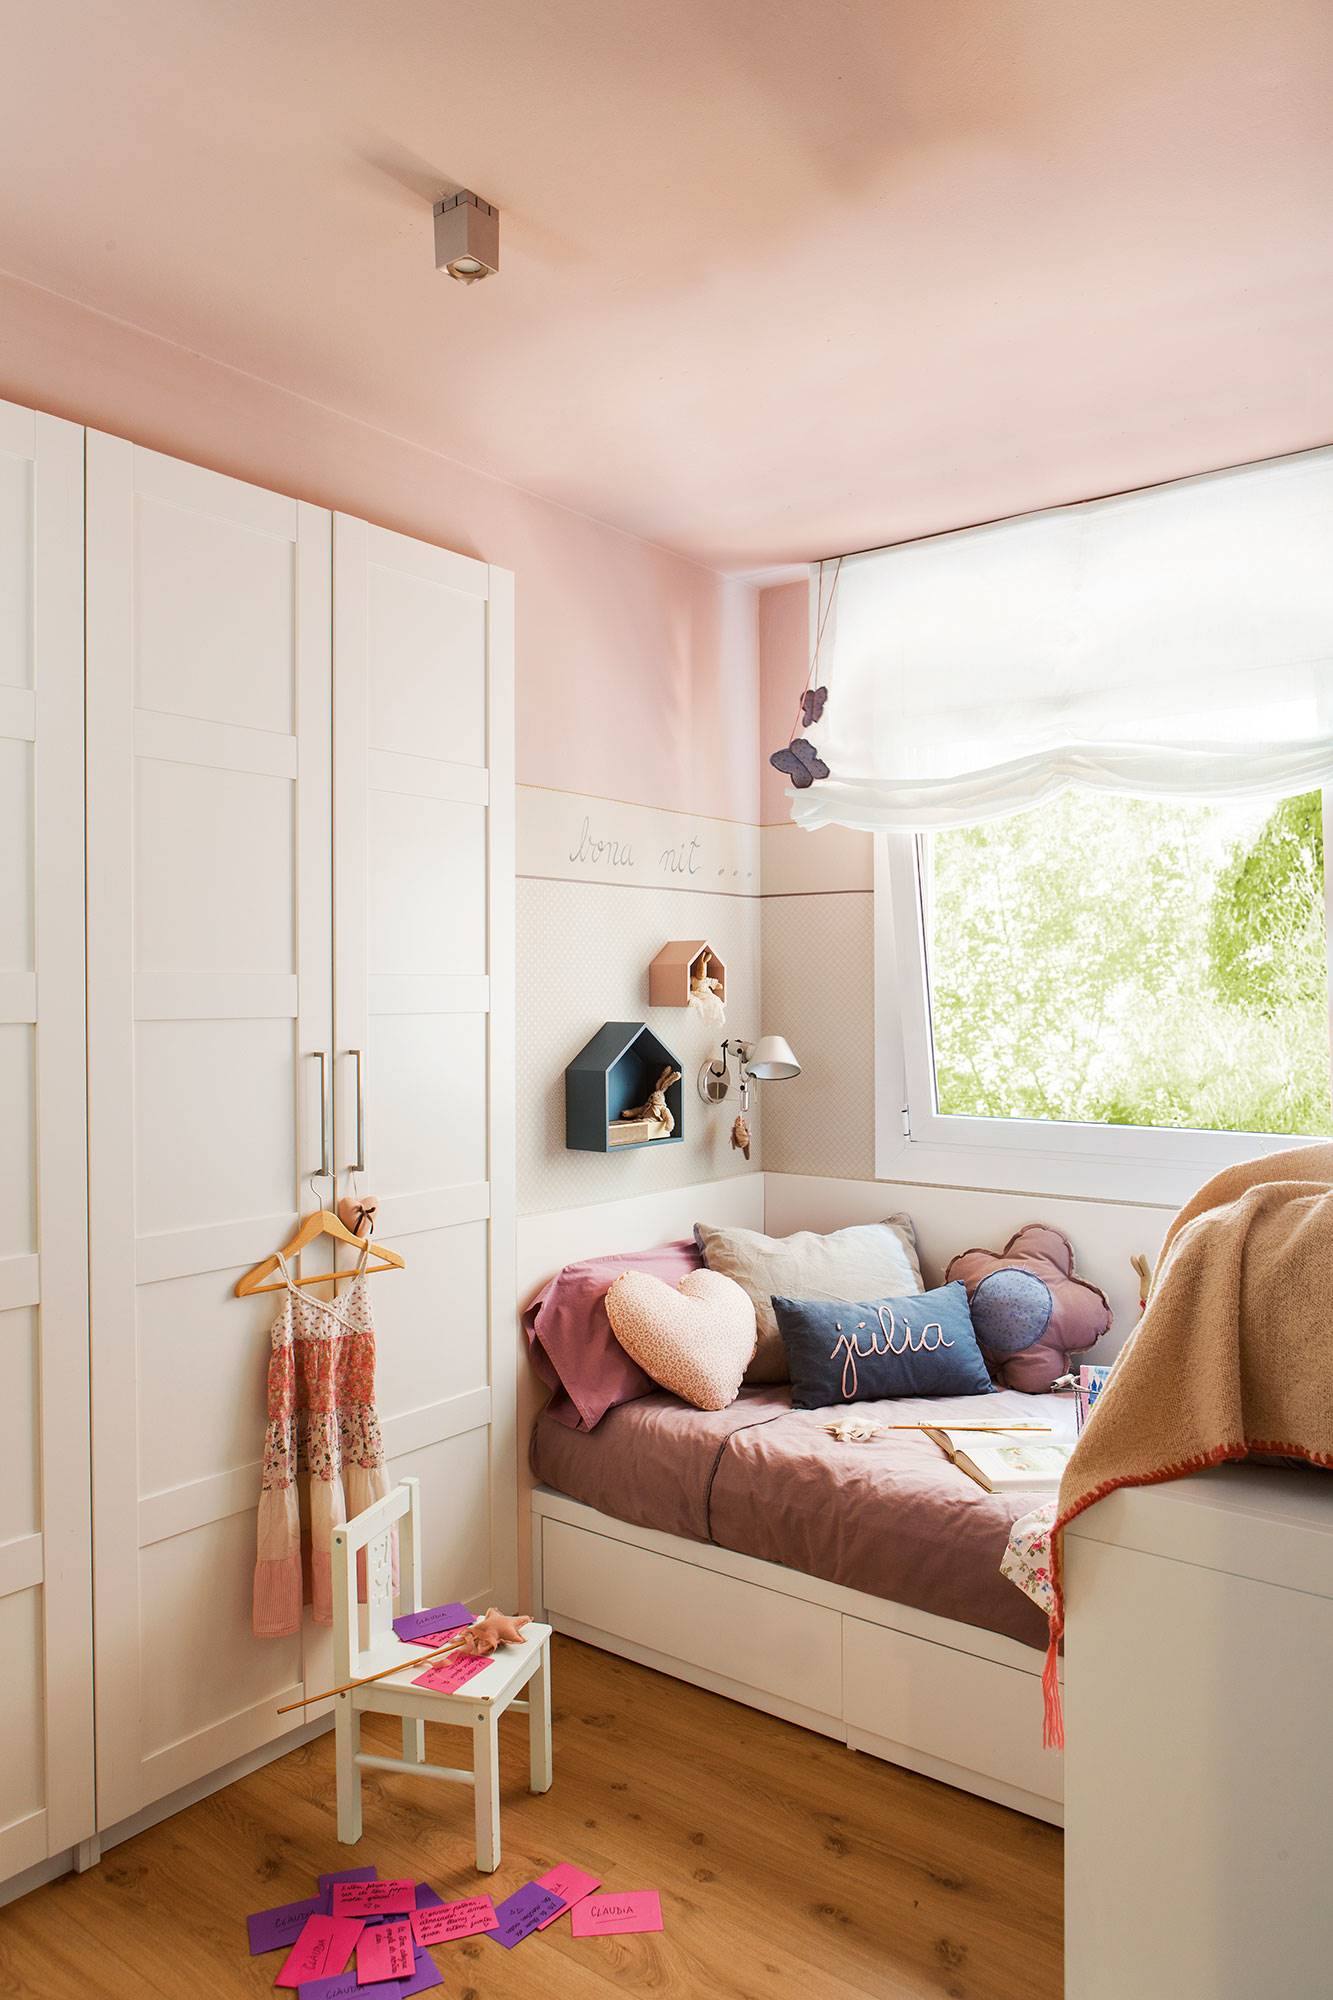 Dormitorio infantil en rosa con cama arrimada a la pared bajo la ventana y armario empotrado en blanco